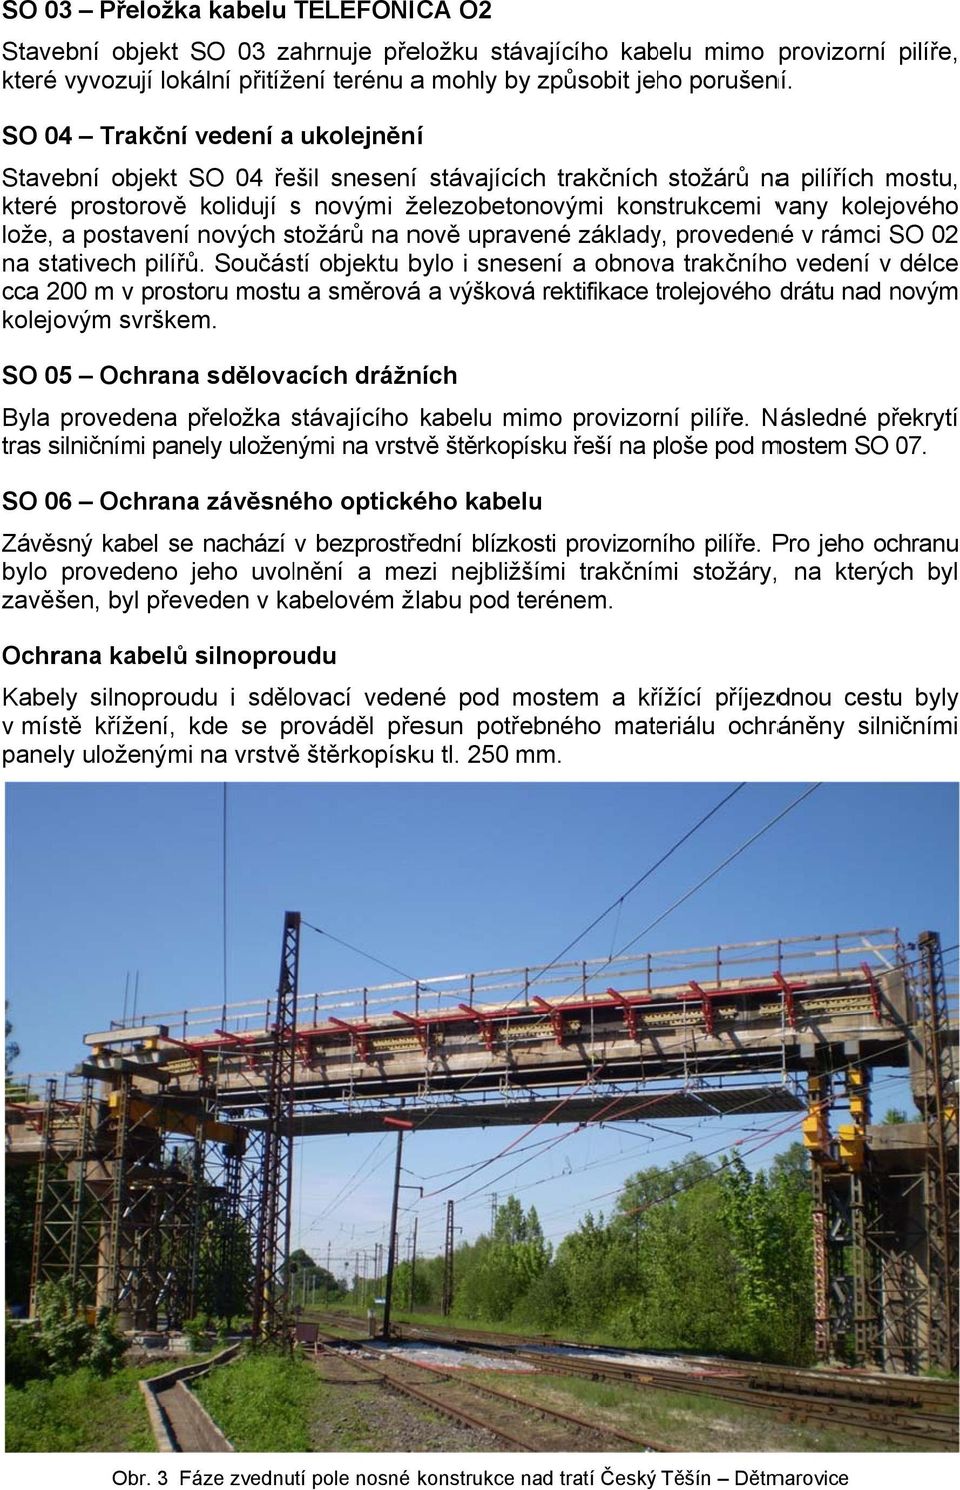 kolejového lože, a postavení nových stožárů na nově upravené základy, provedené v rámci SO 02 na stativech pilířů.